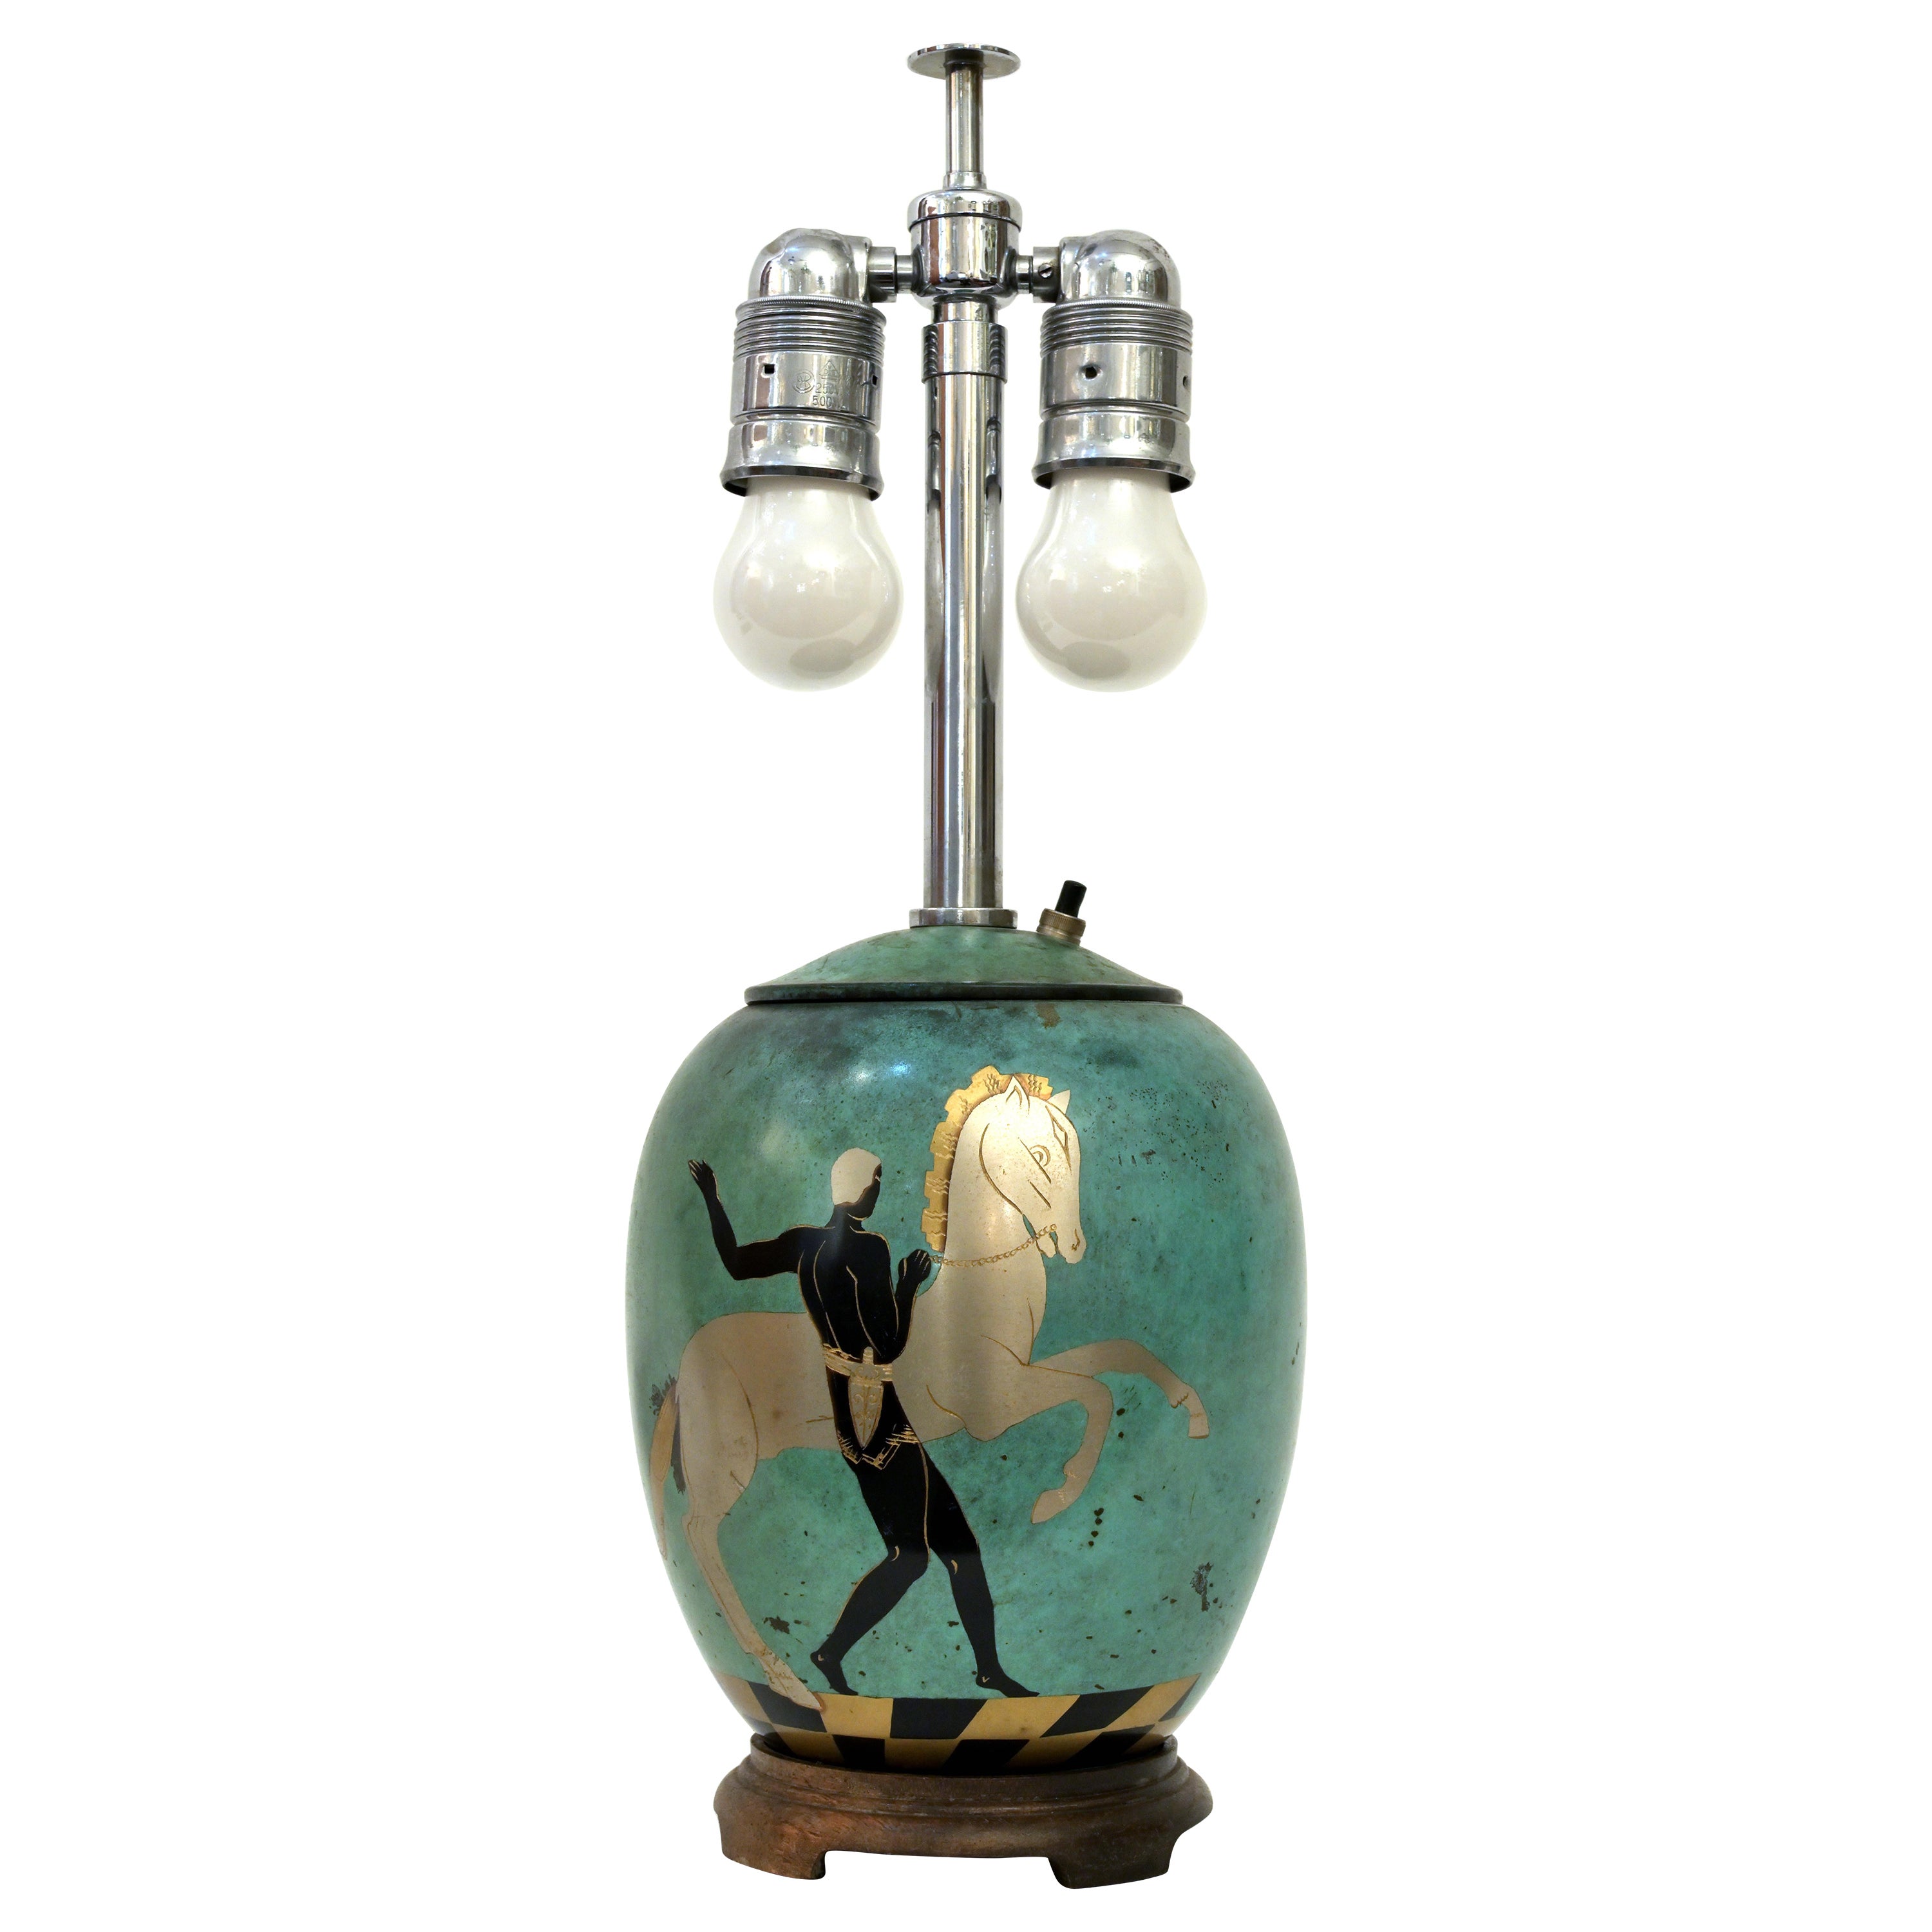 Patinierte Verdigris-Tischlampe „Ikora“ von WMF Company, 1920er Jahre